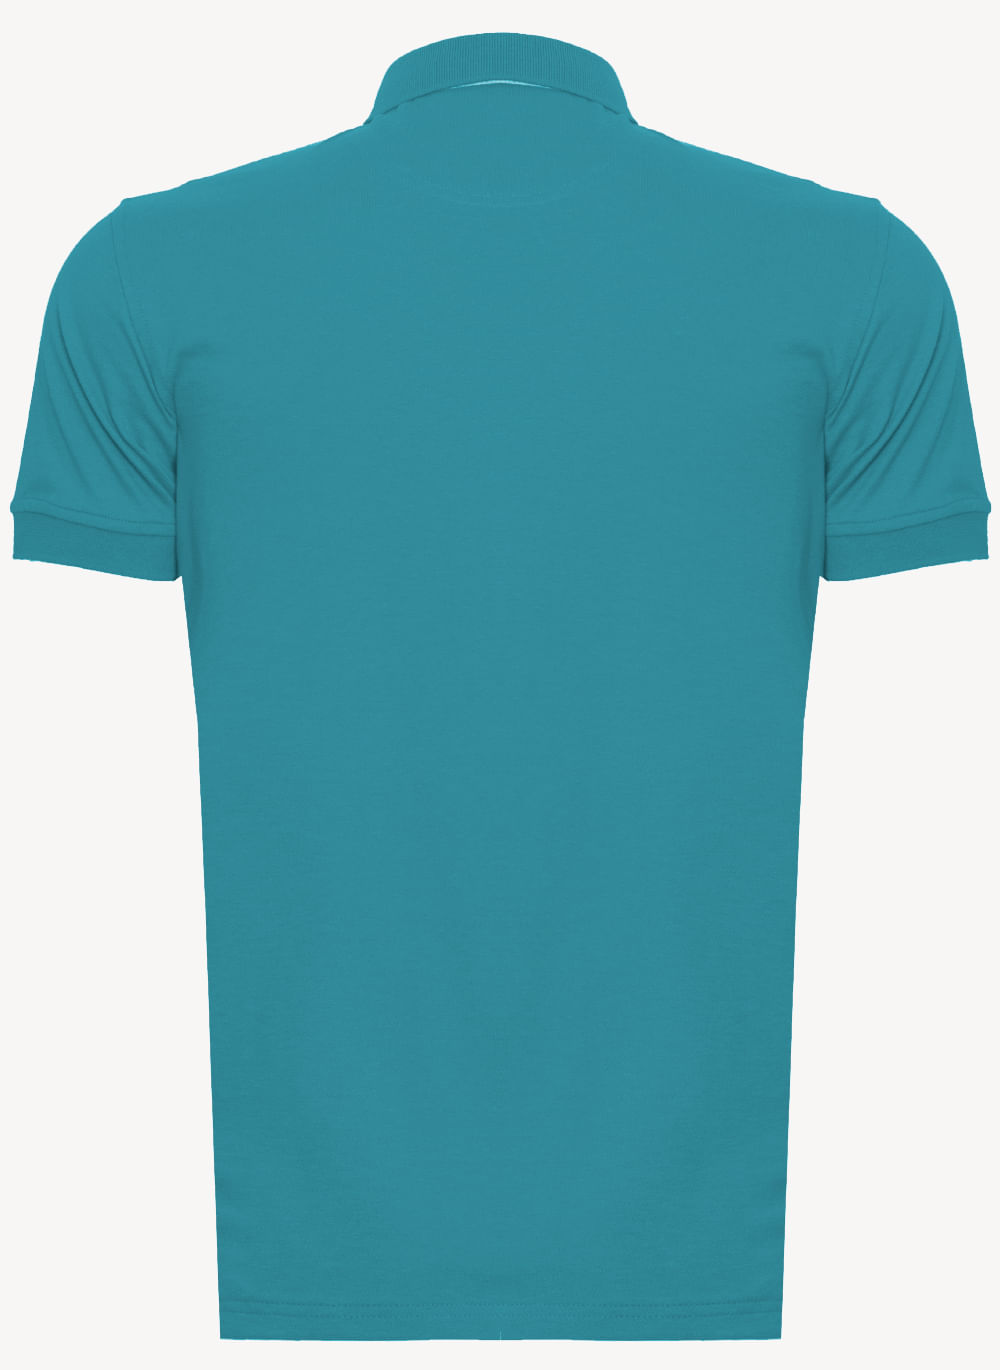 Camisa-Polo-Azul-Turquesa-Lisa-Aleatory-Turquesa-P